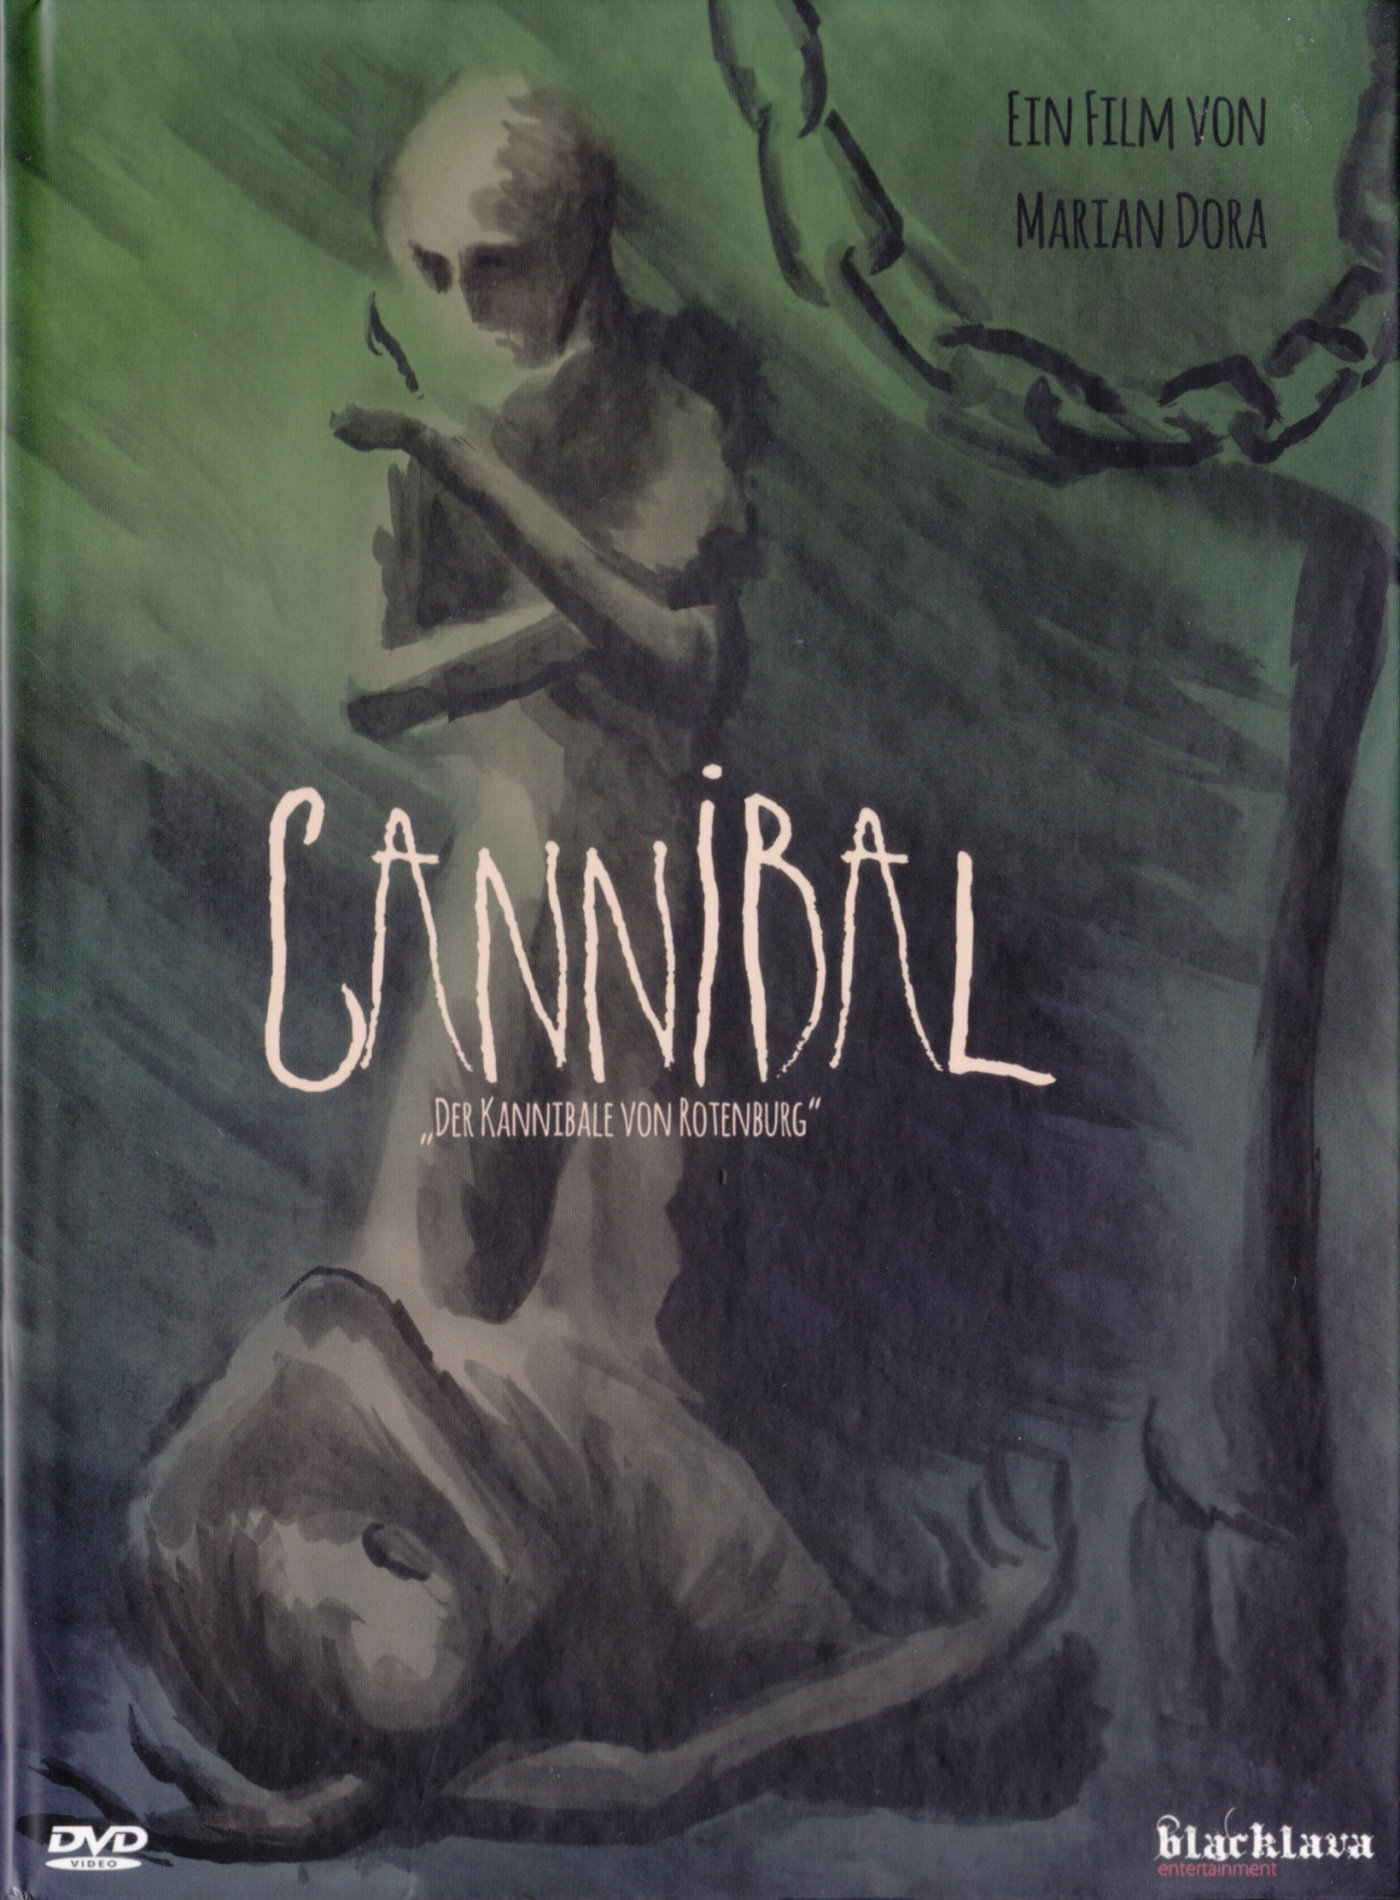 Cover - Cannibal - Der Kannibale von Rotenburg.jpg